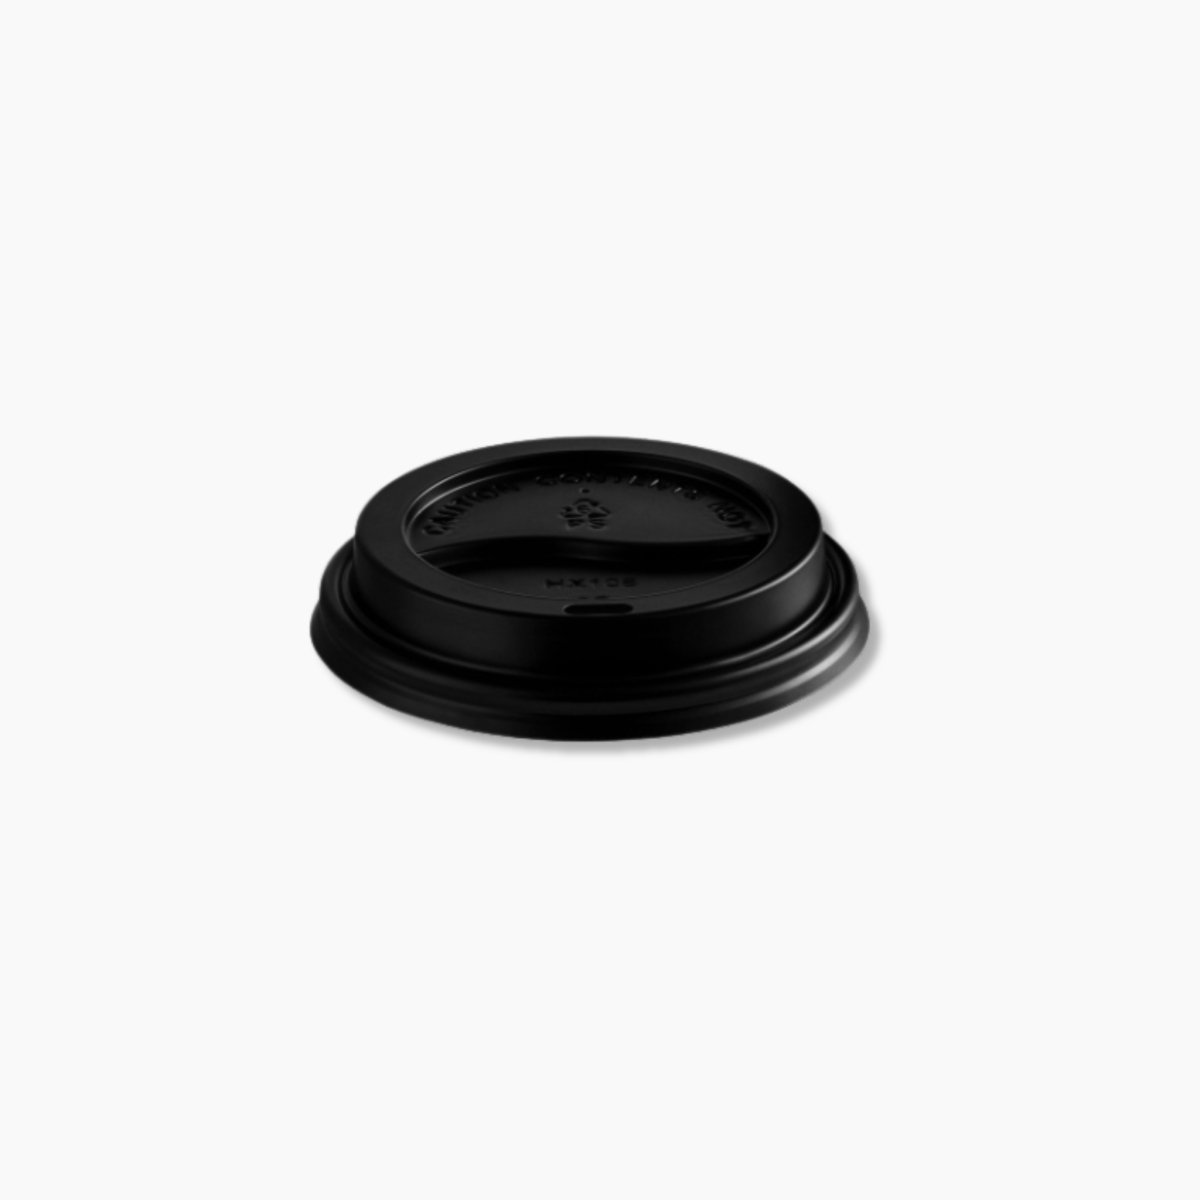 Black Coffee Cup Lid - 80mm